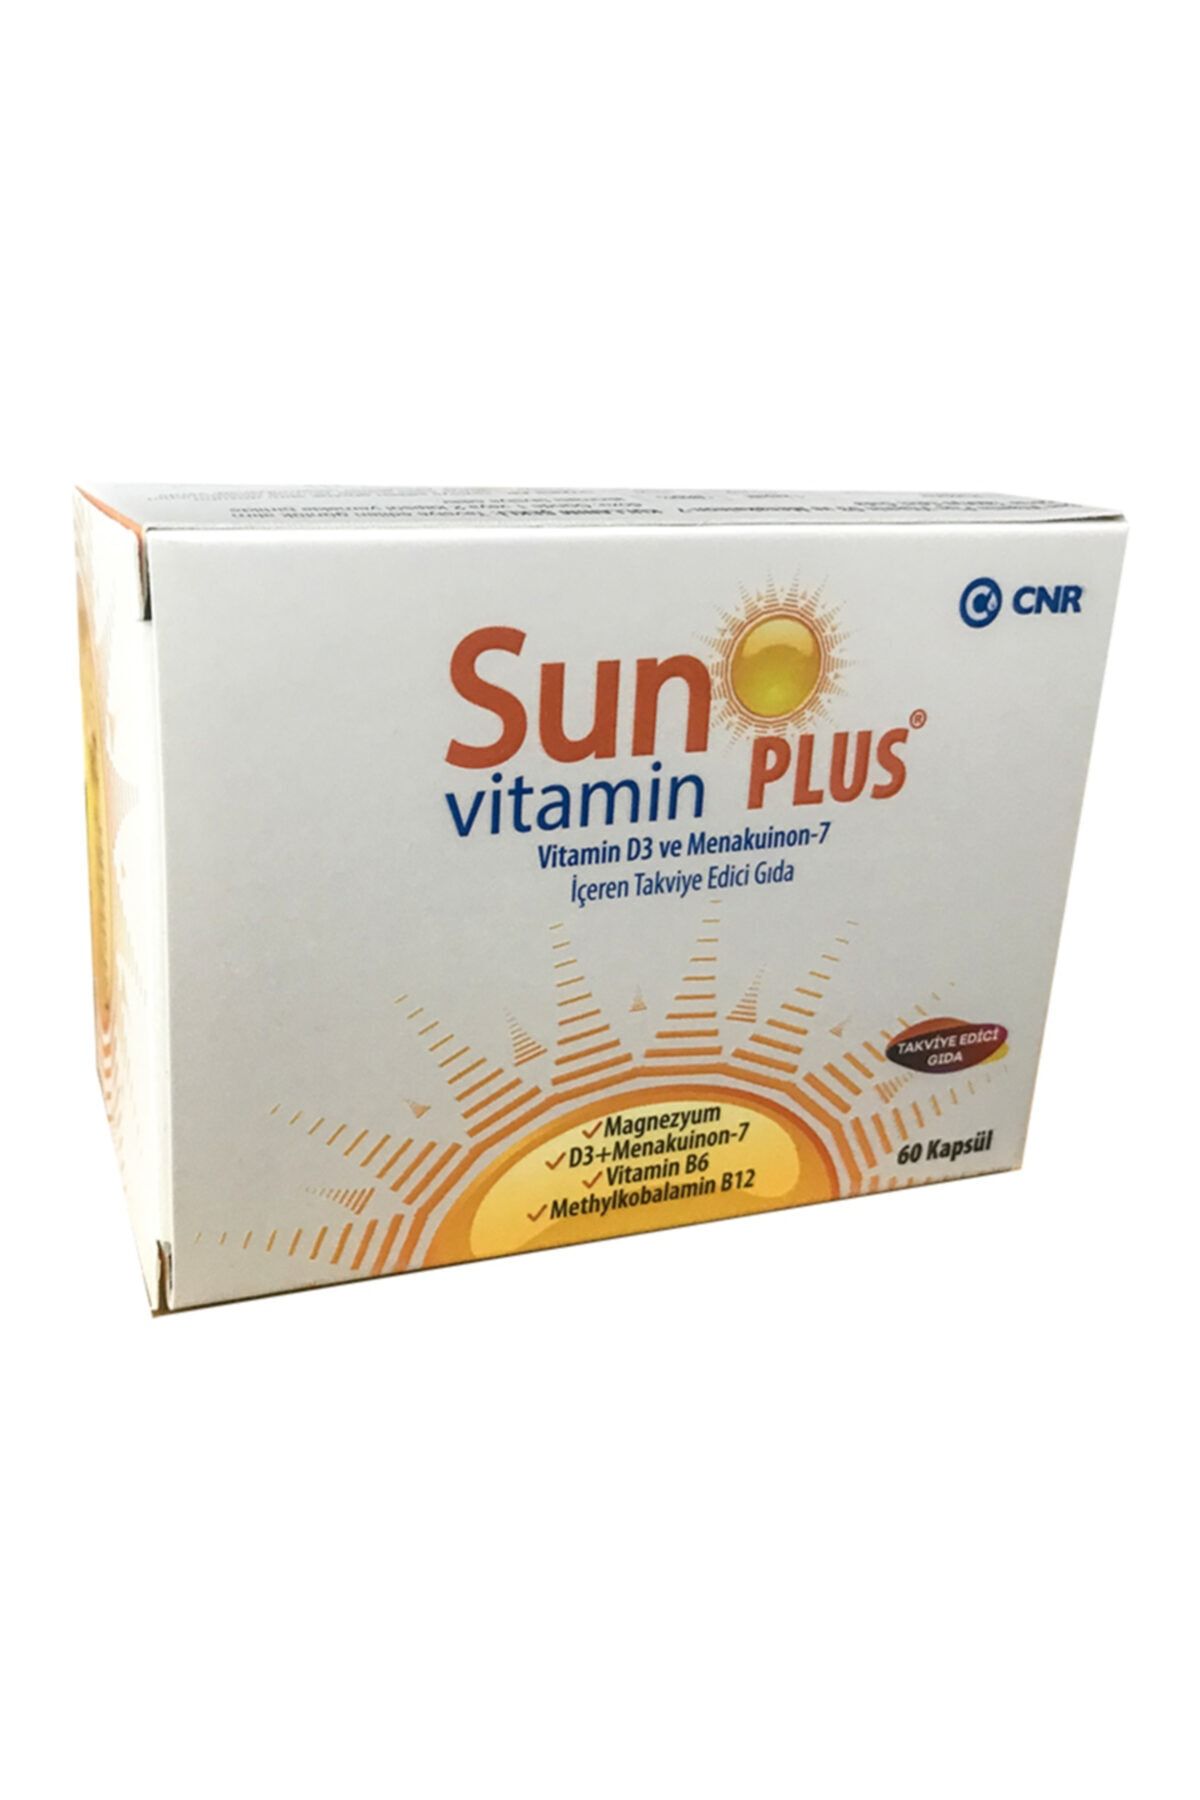 Sun vitamin